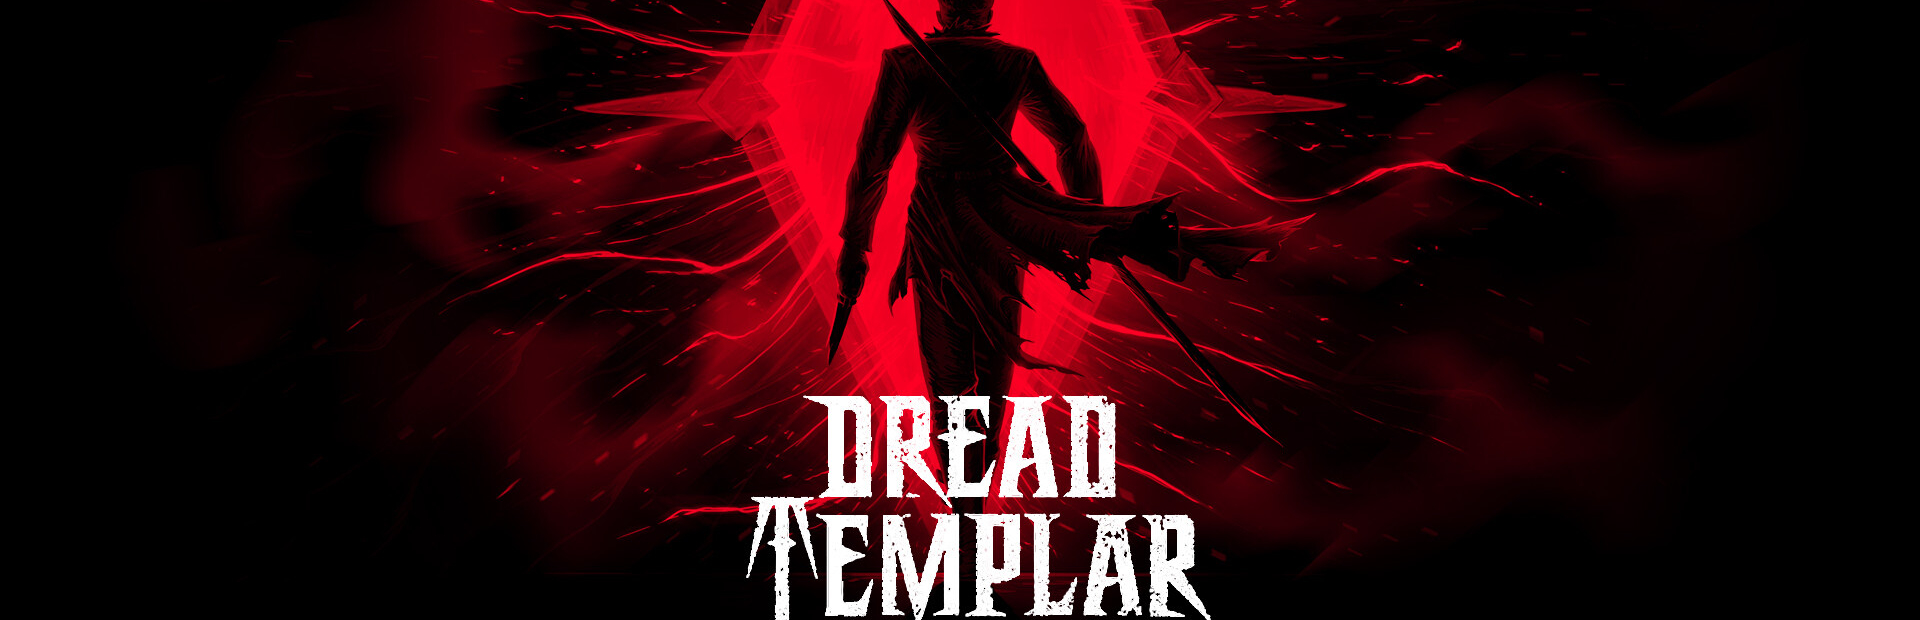 دانلود بازی Dead Templar برای پی سی | گیمباتو